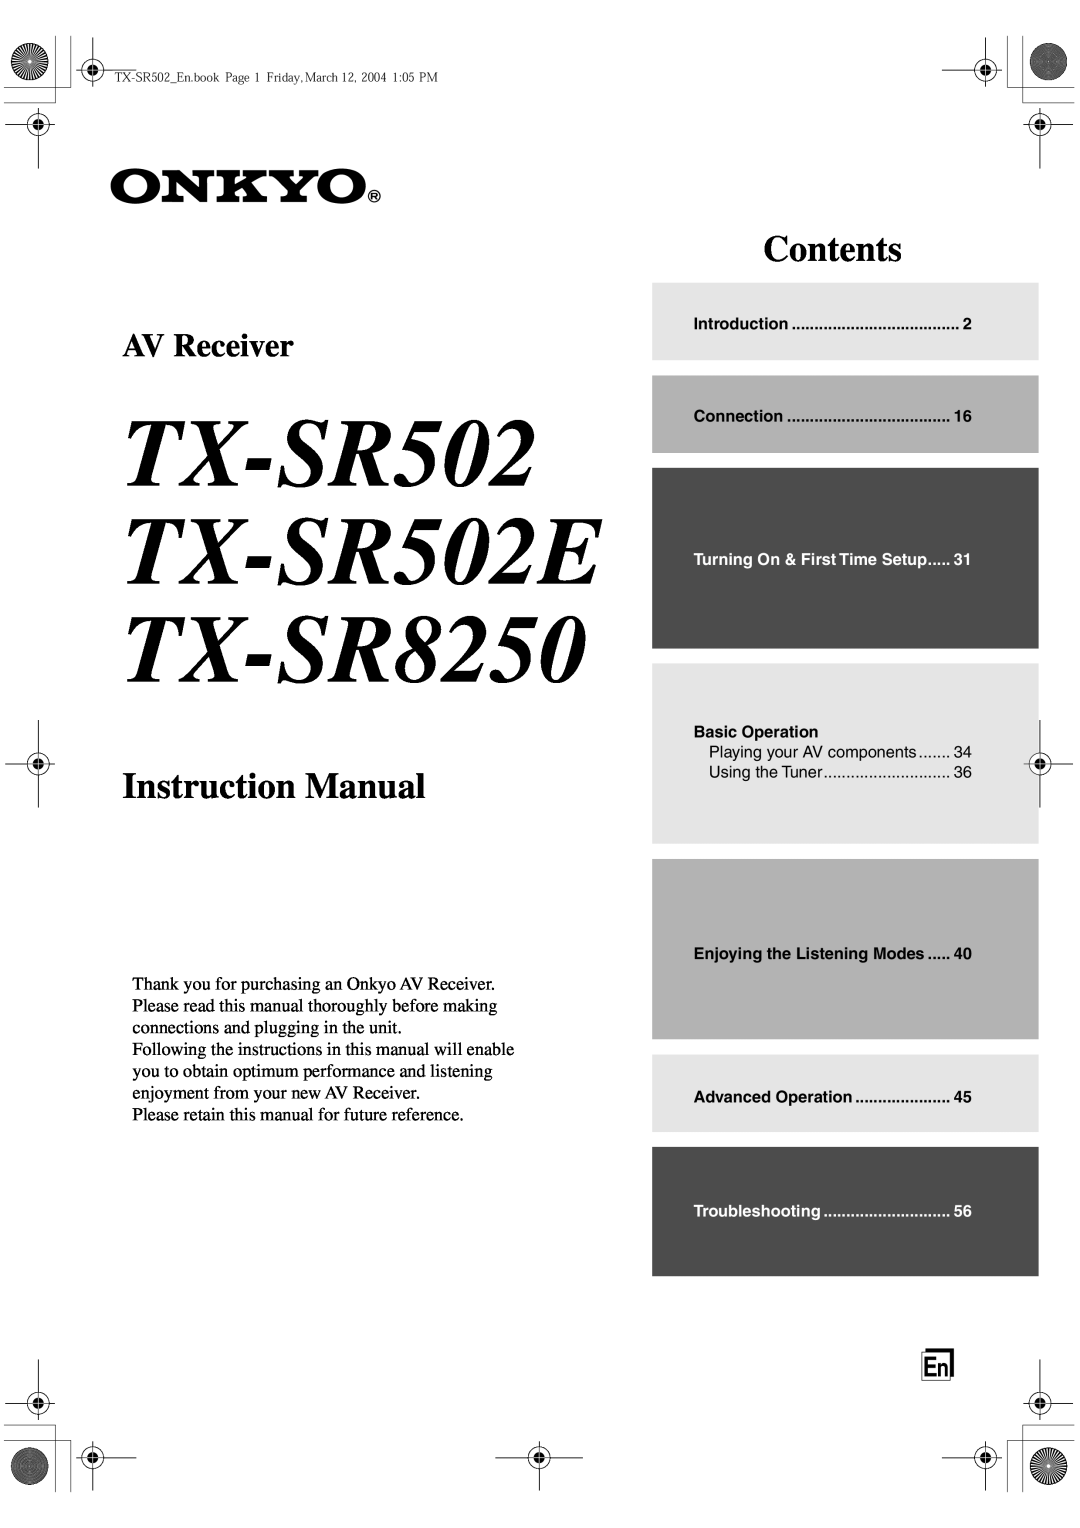 Onkyo instruction manual TX-SR502 TX-SR502E TX-SR8250, Instruction Manual, Contents, AV Receiver 